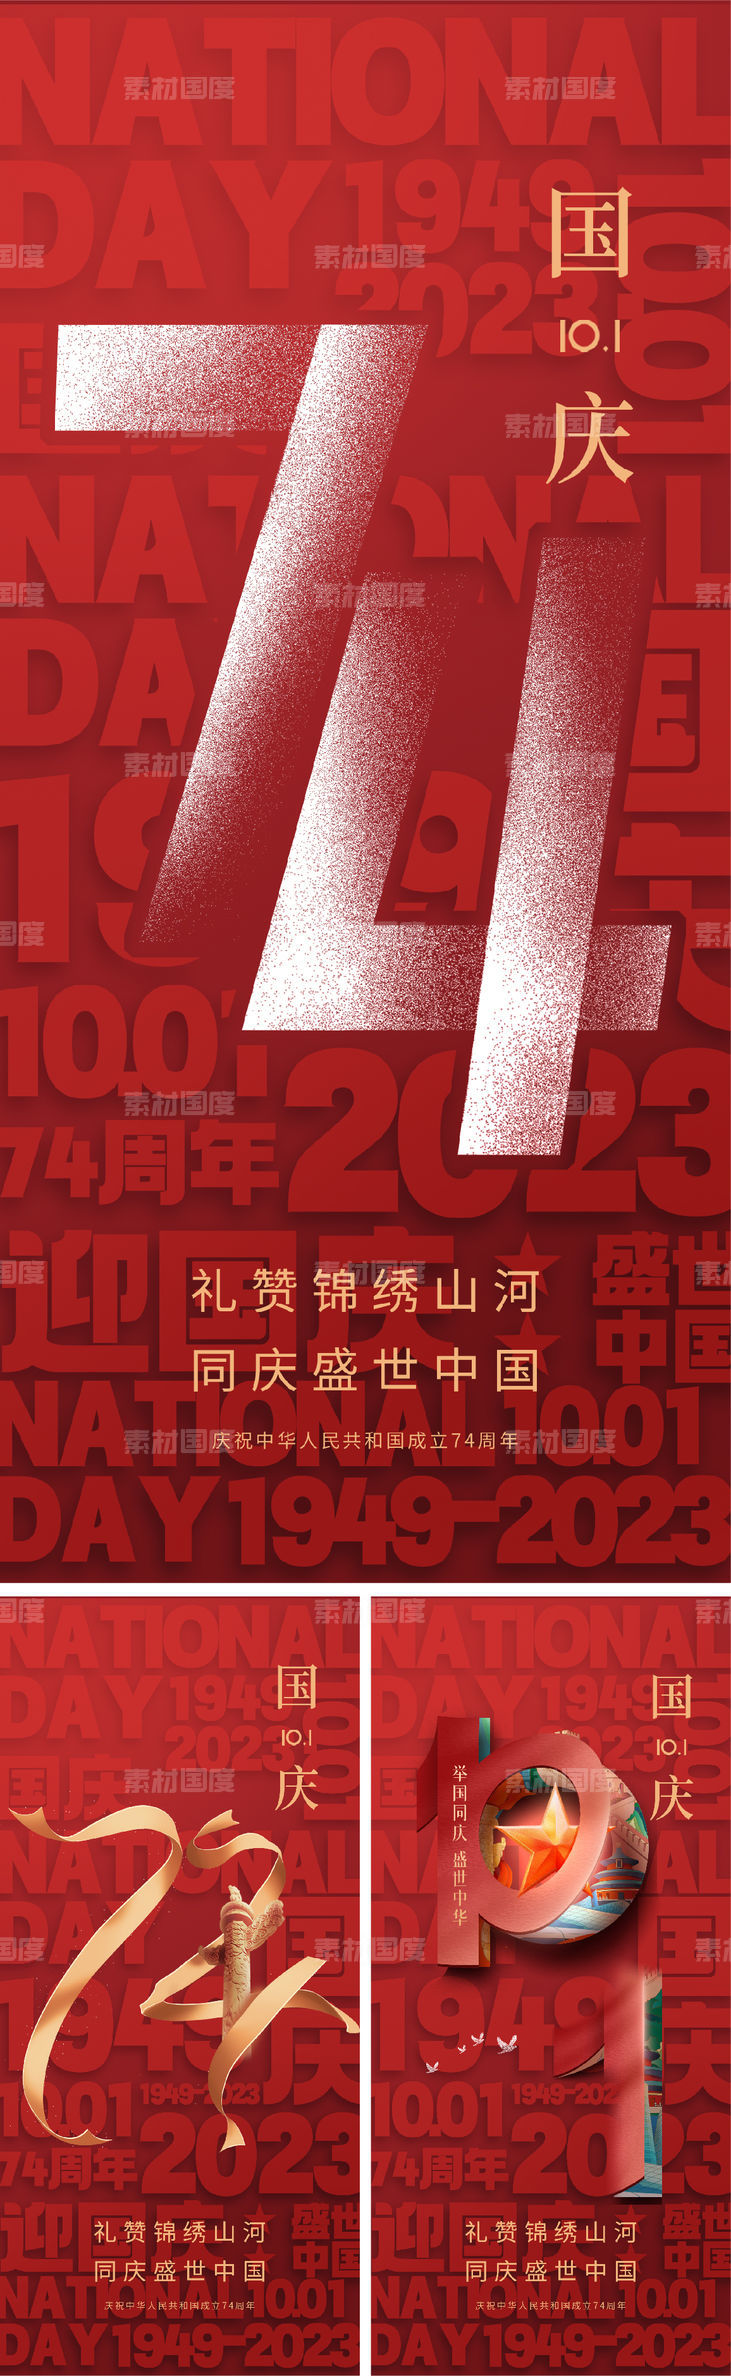 国庆节 74周年 文字 折纸 创意